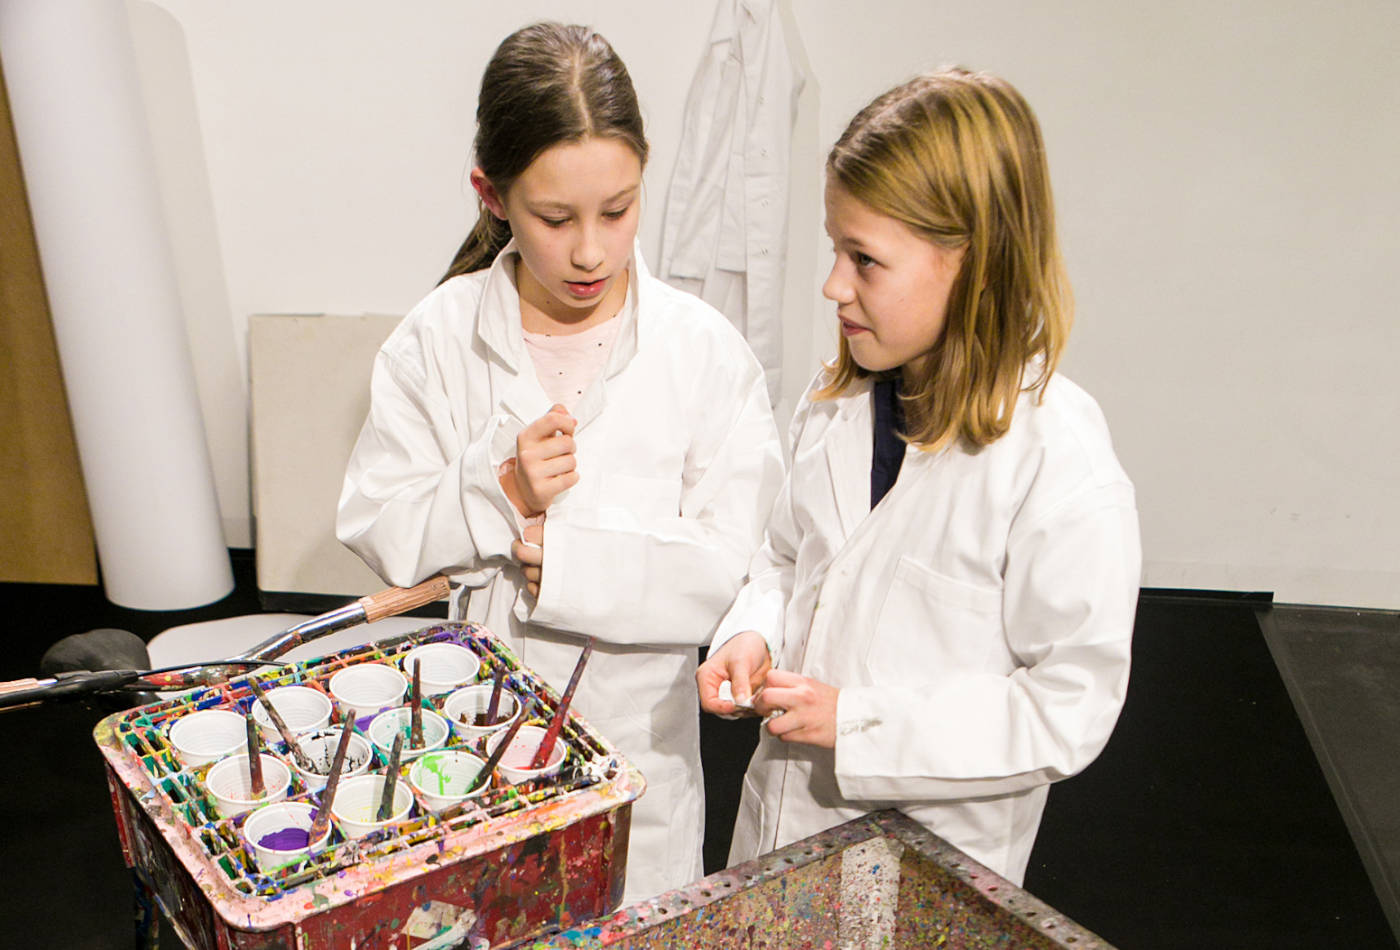 Zwei Mädchen in weißen Kitteln stehen vor einem Farbkasten